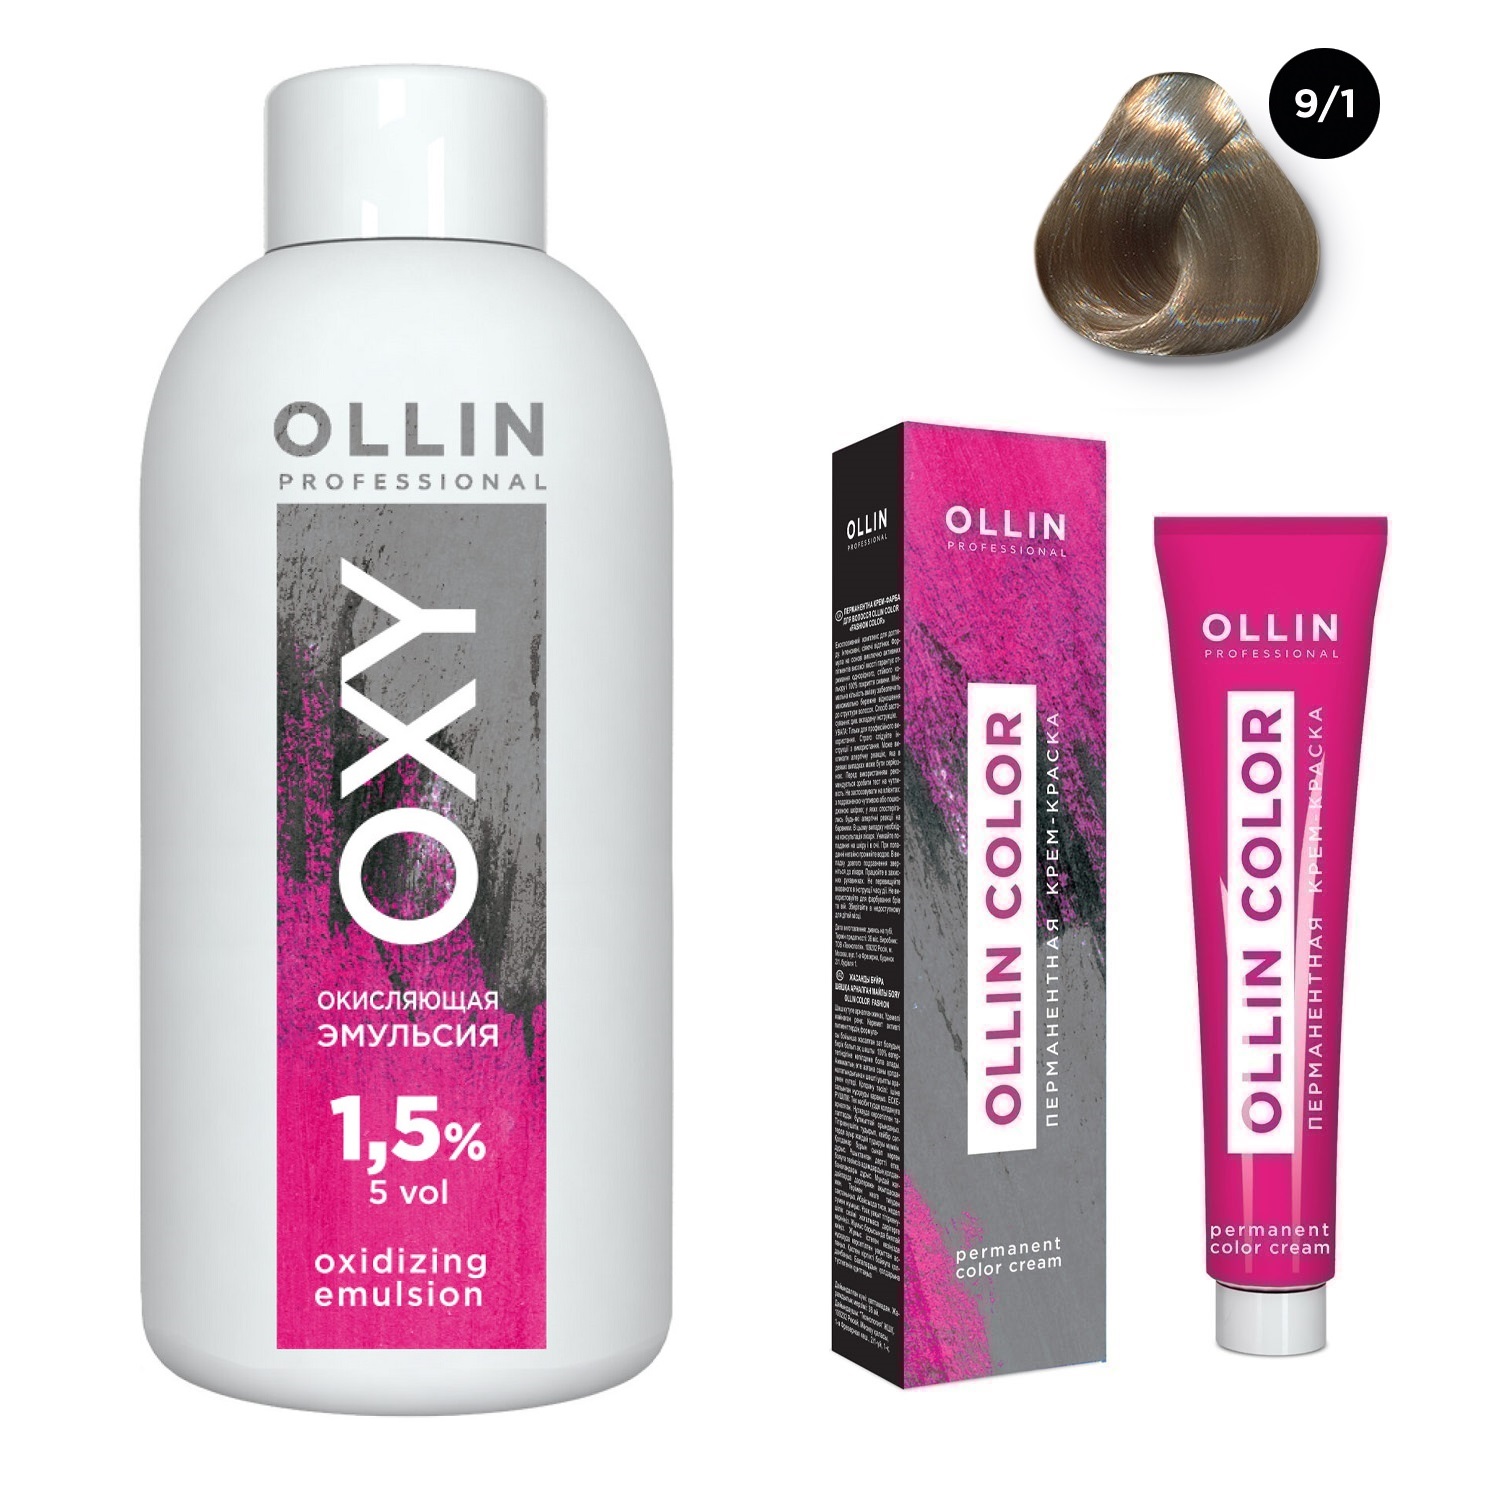 Ollin Professional Набор Перманентная крем-краска для волос Ollin Color оттенок 9/1 блондин пепельный 100 мл + Окисляющая эмульсия Oxy 1,5% 150 мл (Ollin Professional, Ollin Color)